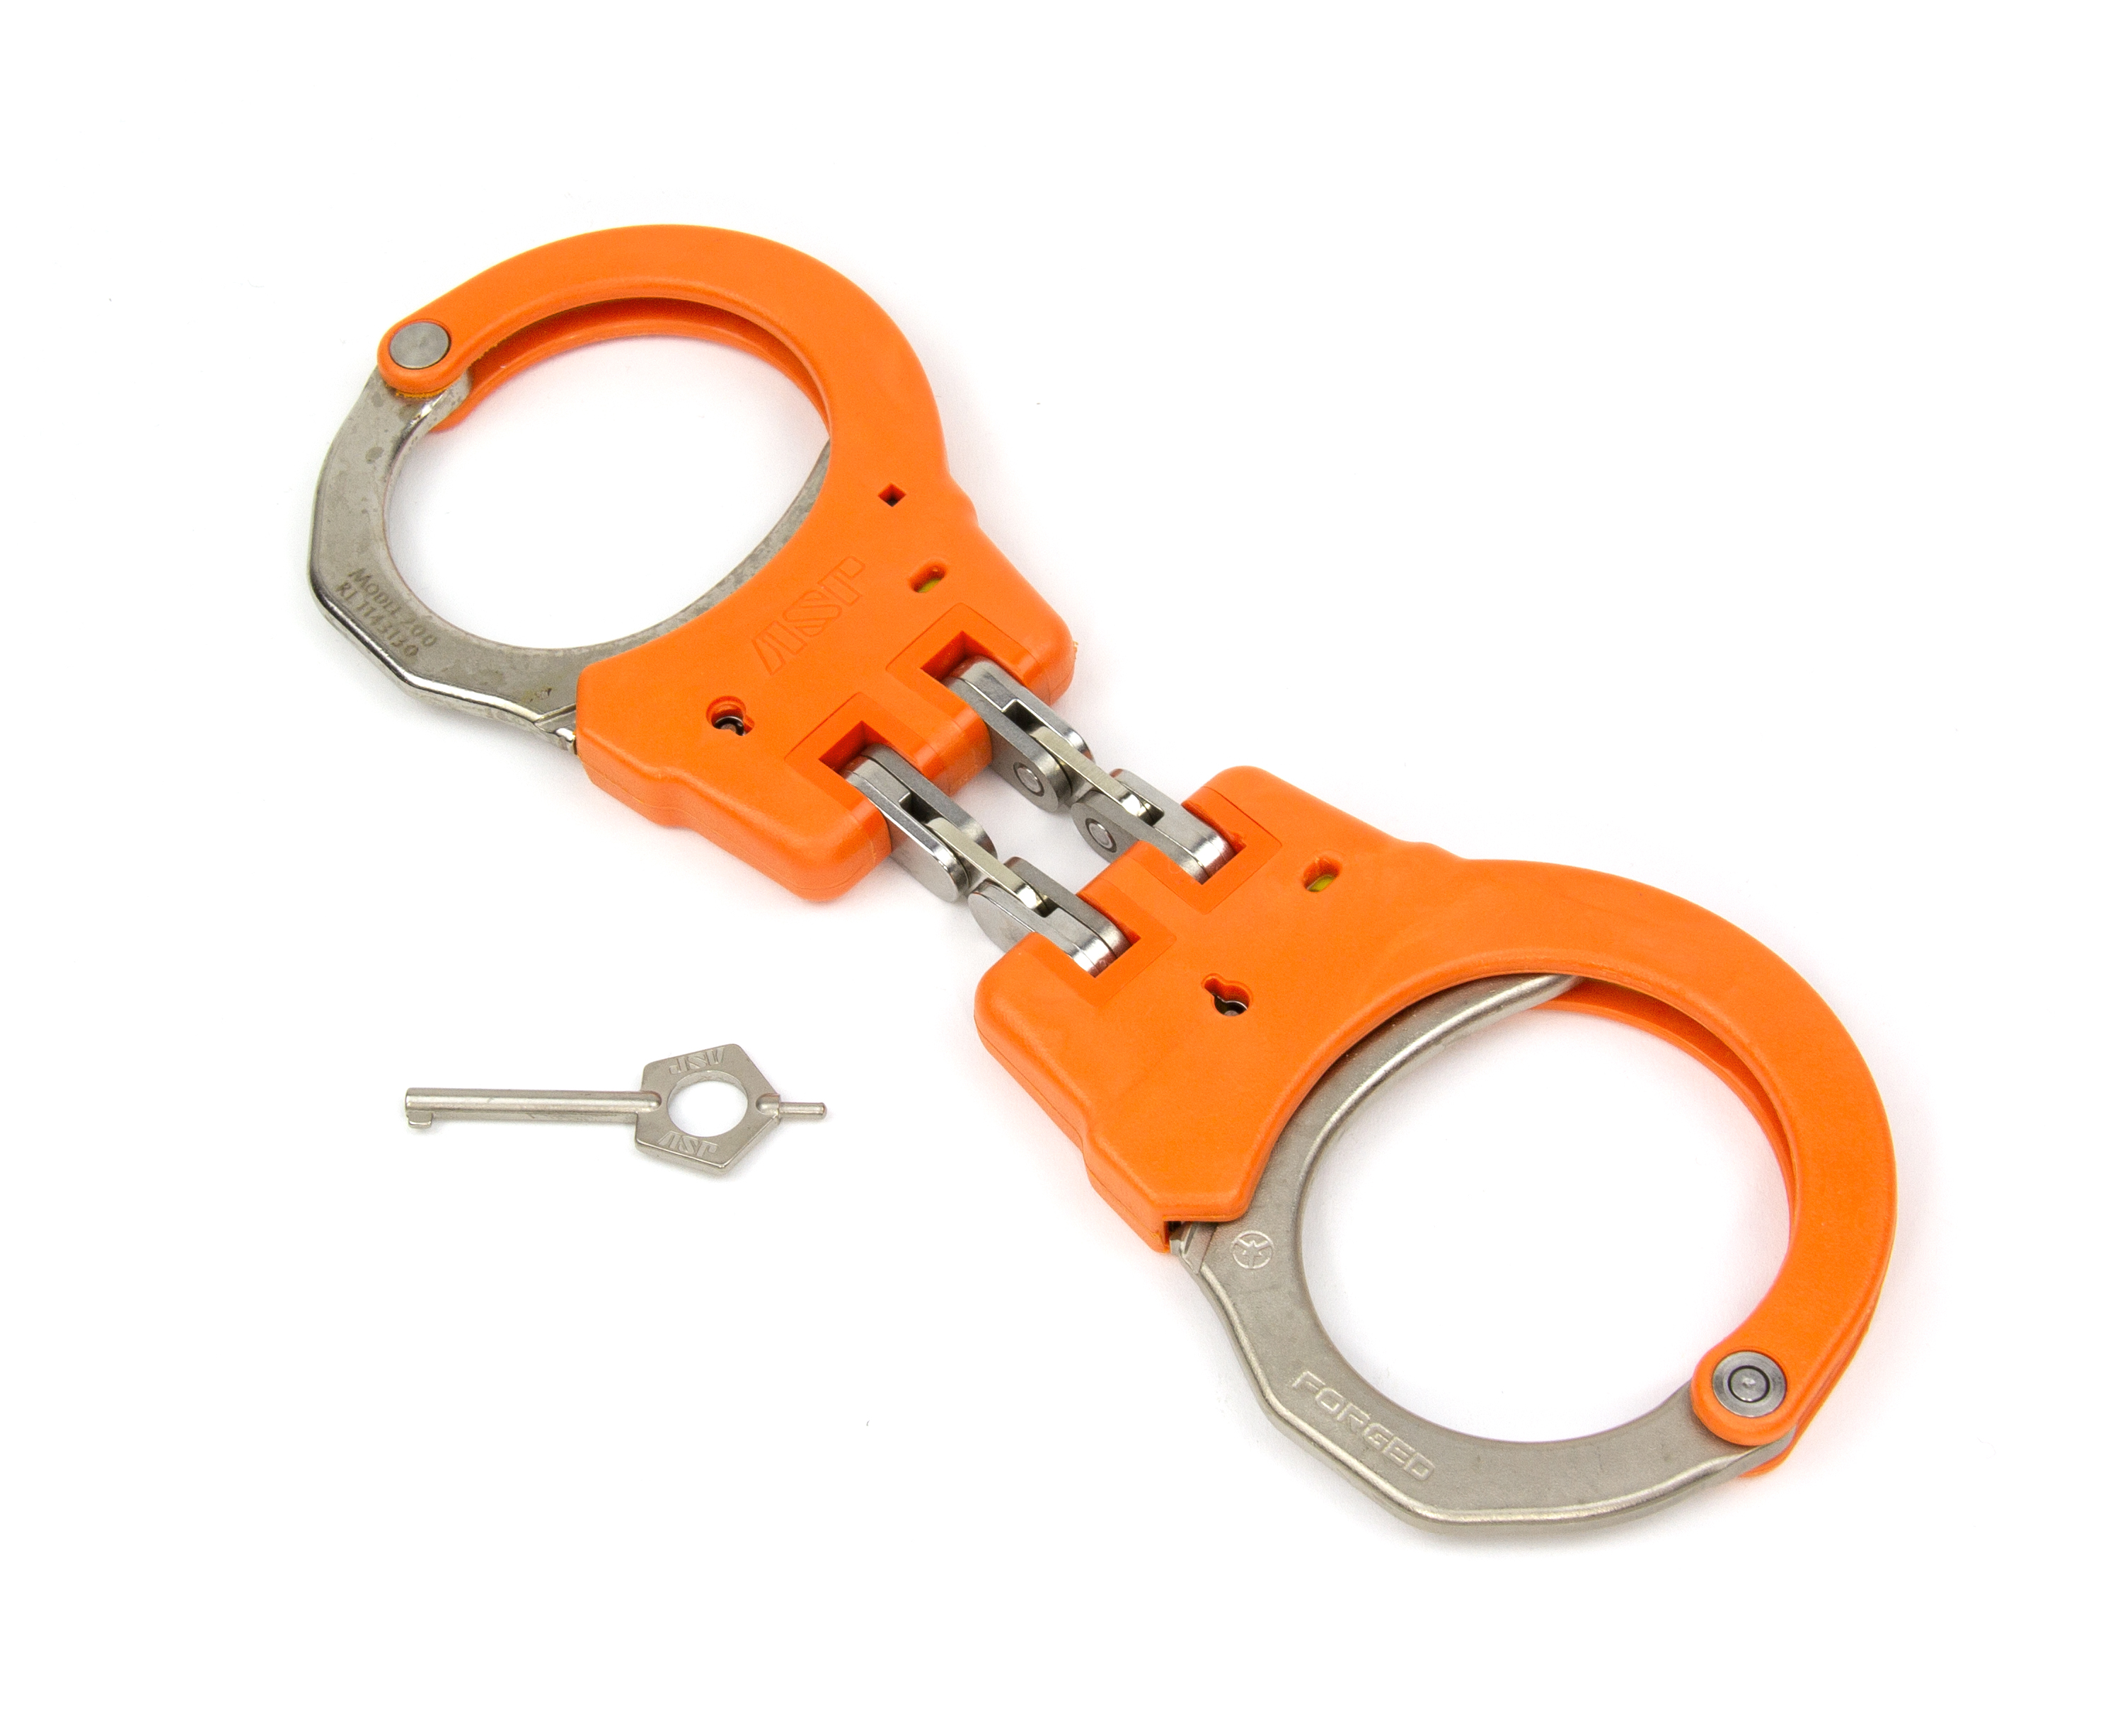 ASP Identifier Hinge Flex Cuffs Orange - 56116 / Model 200 Orange